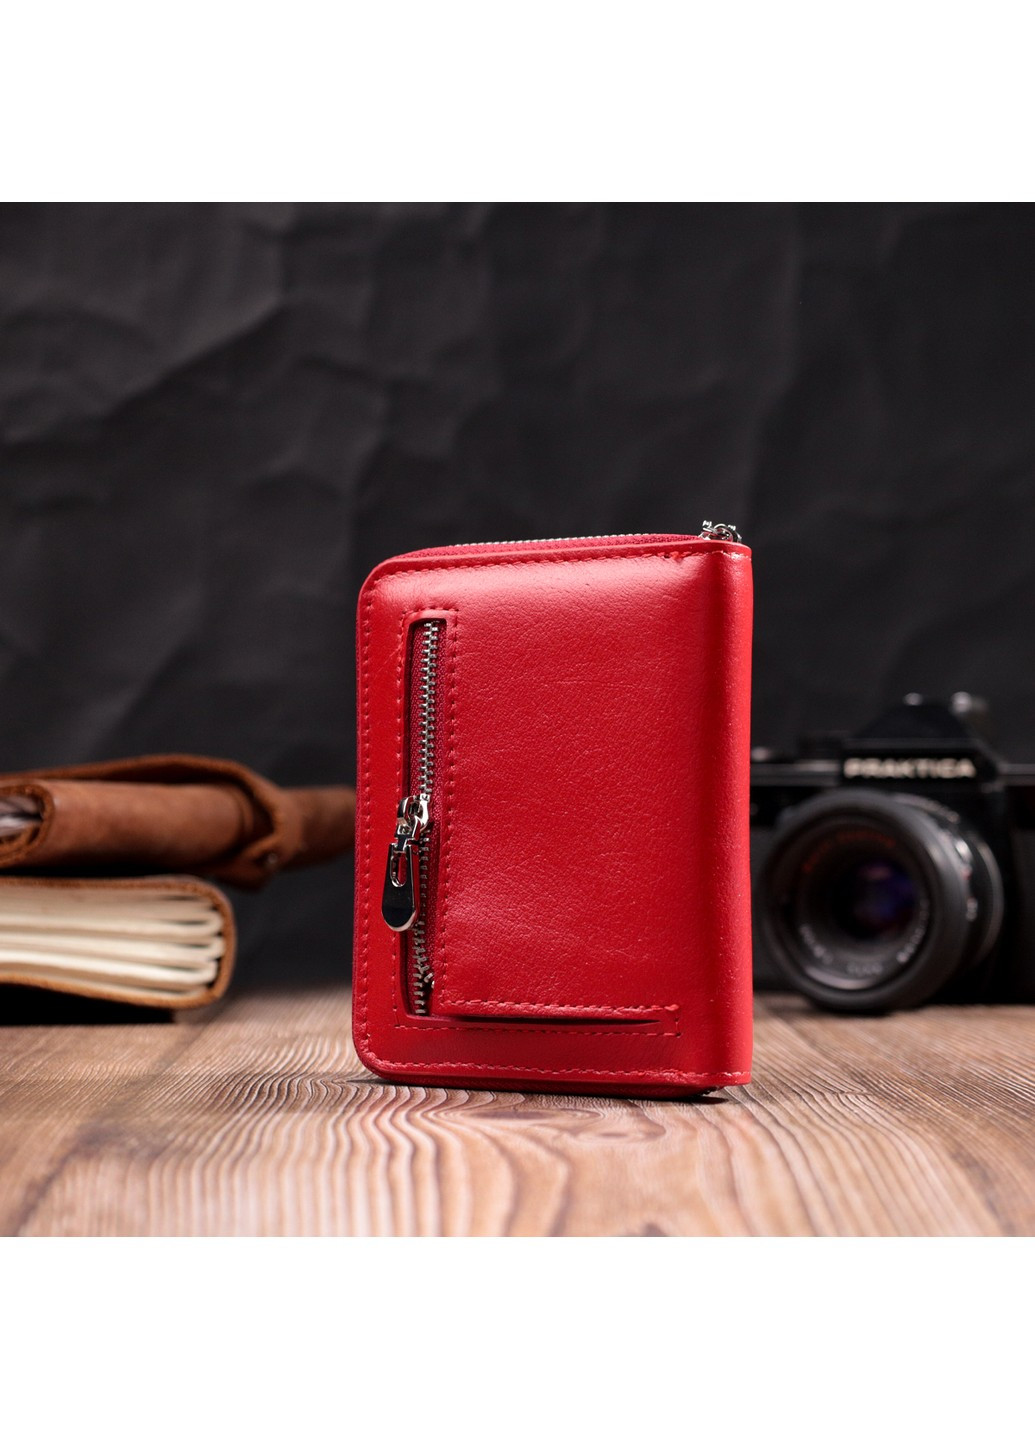 Стильный кожаный кошелек для женщин на молнии с тисненым логотипом производителя 19490 Красный st leather (277980491)